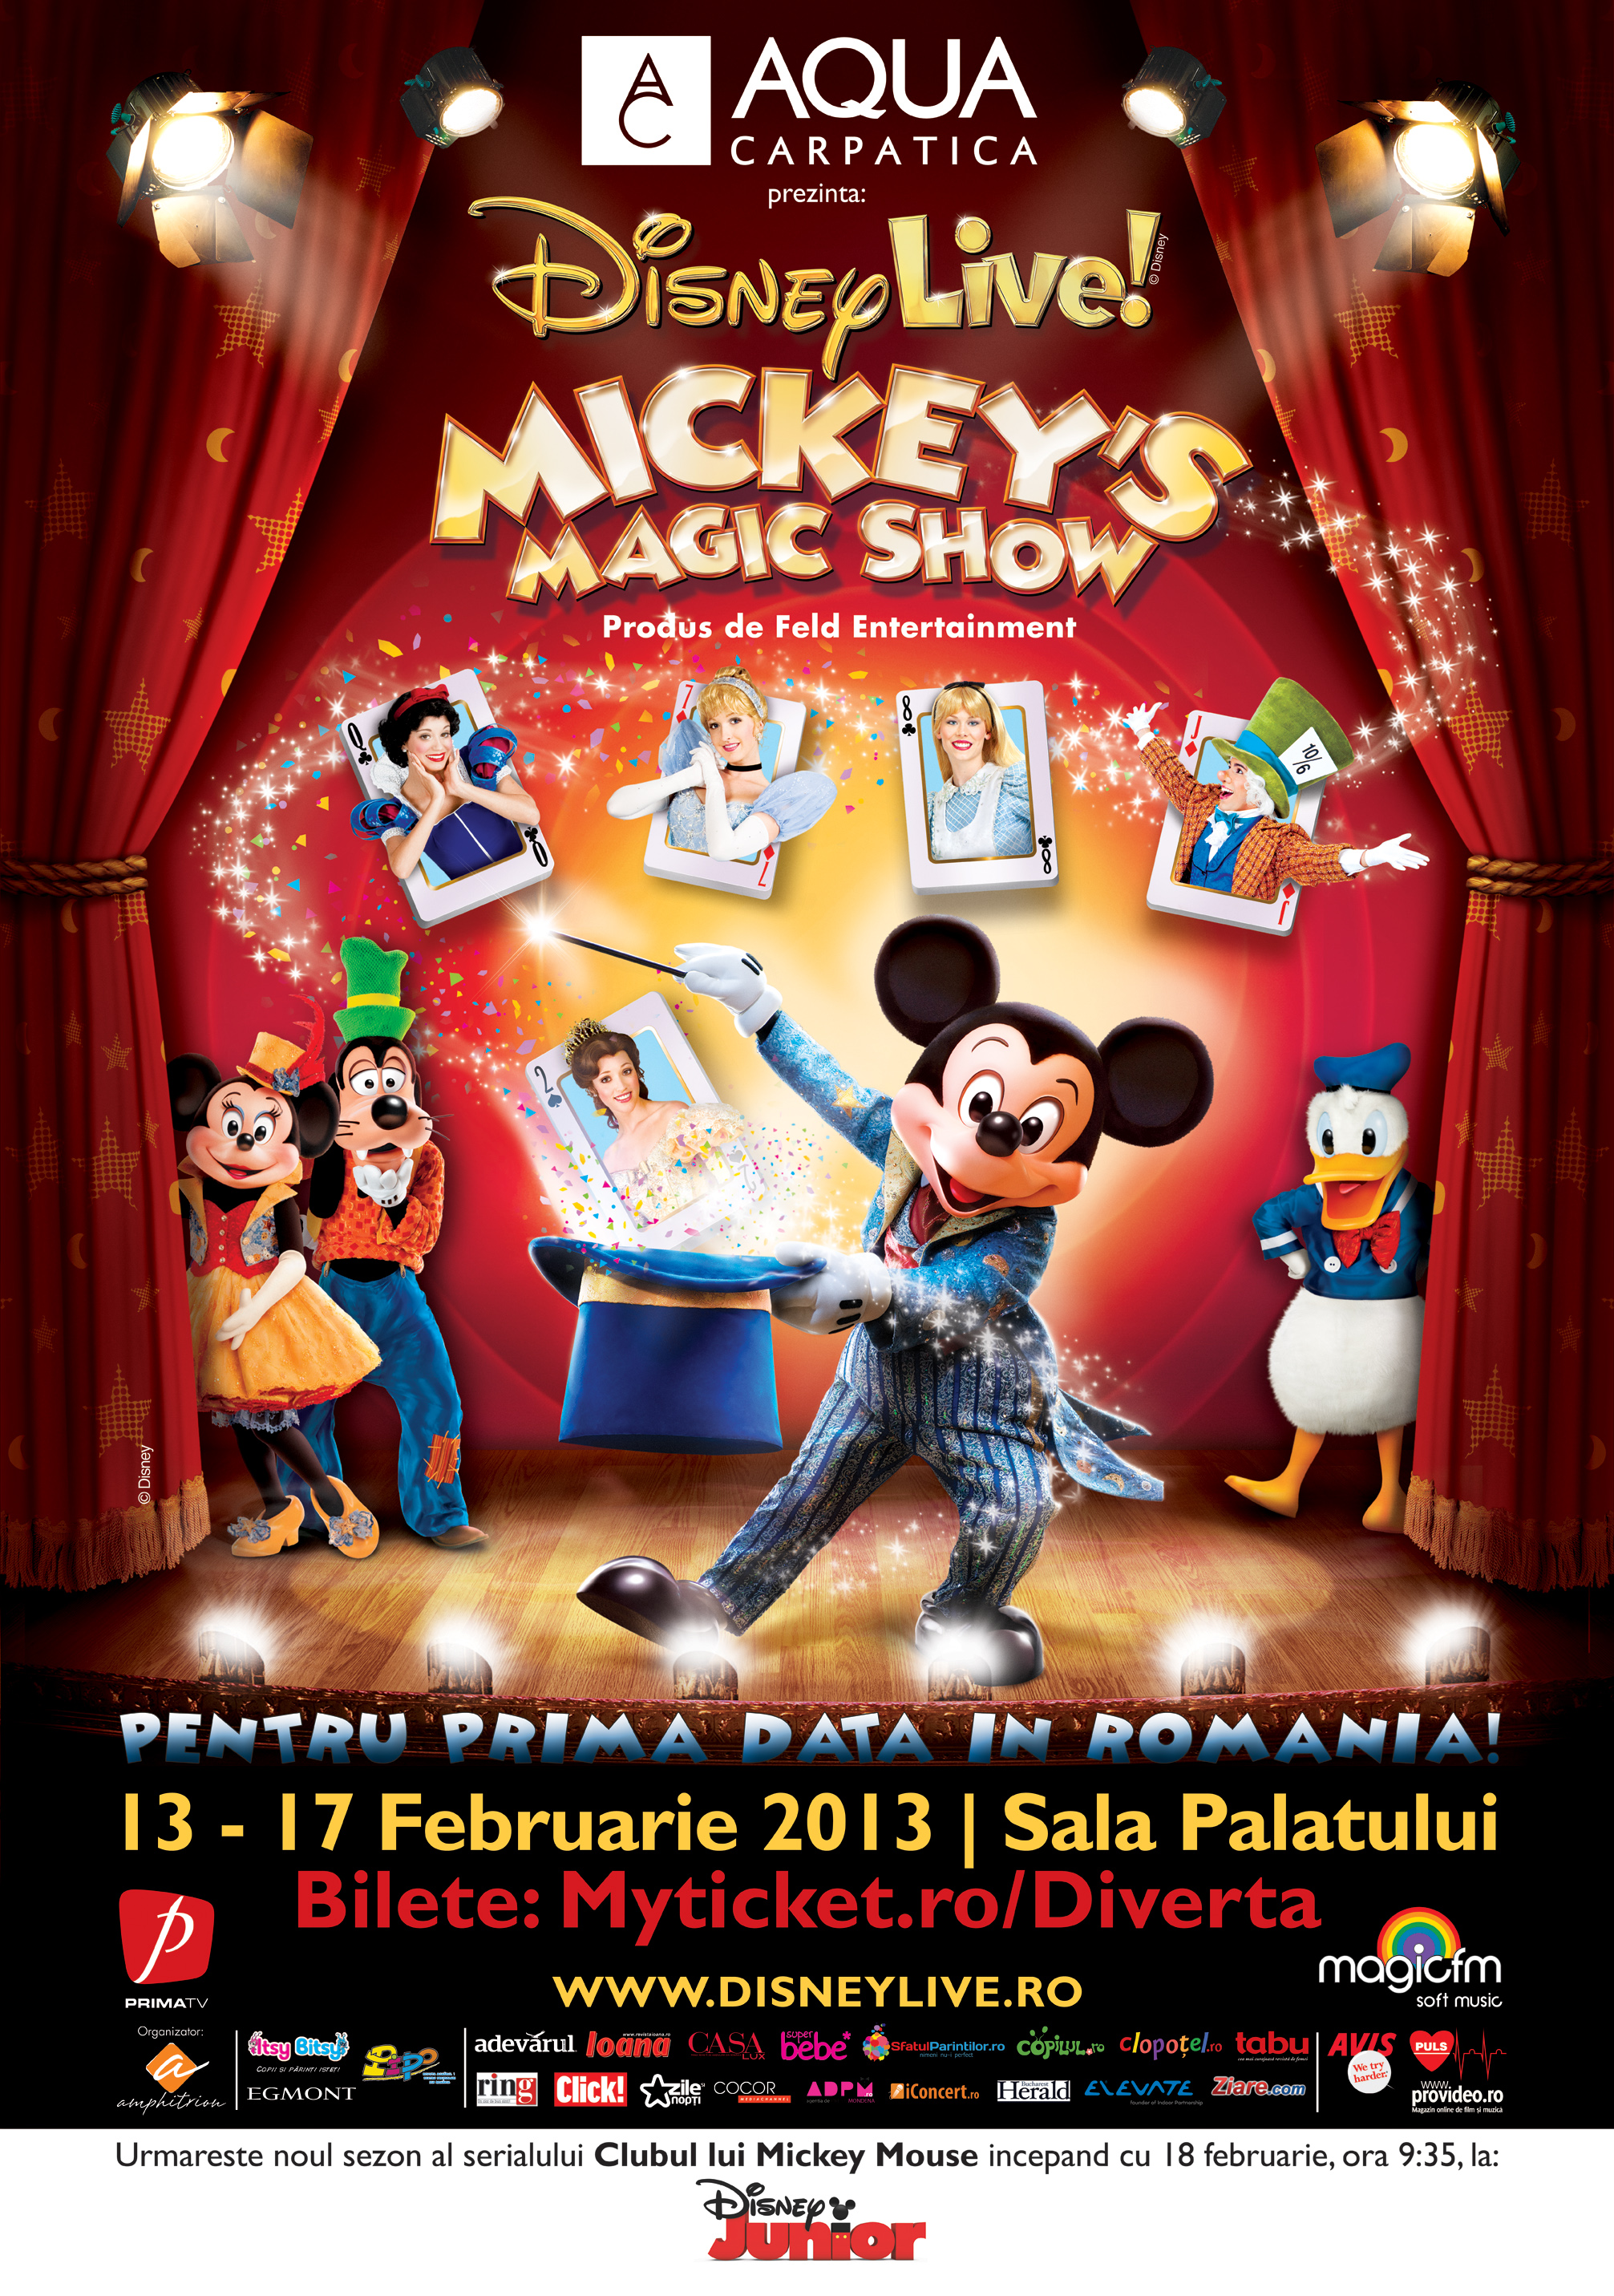 Reguli de acces si informatii utile pentru cele noua reprezentatii Mickey’s Magic Show